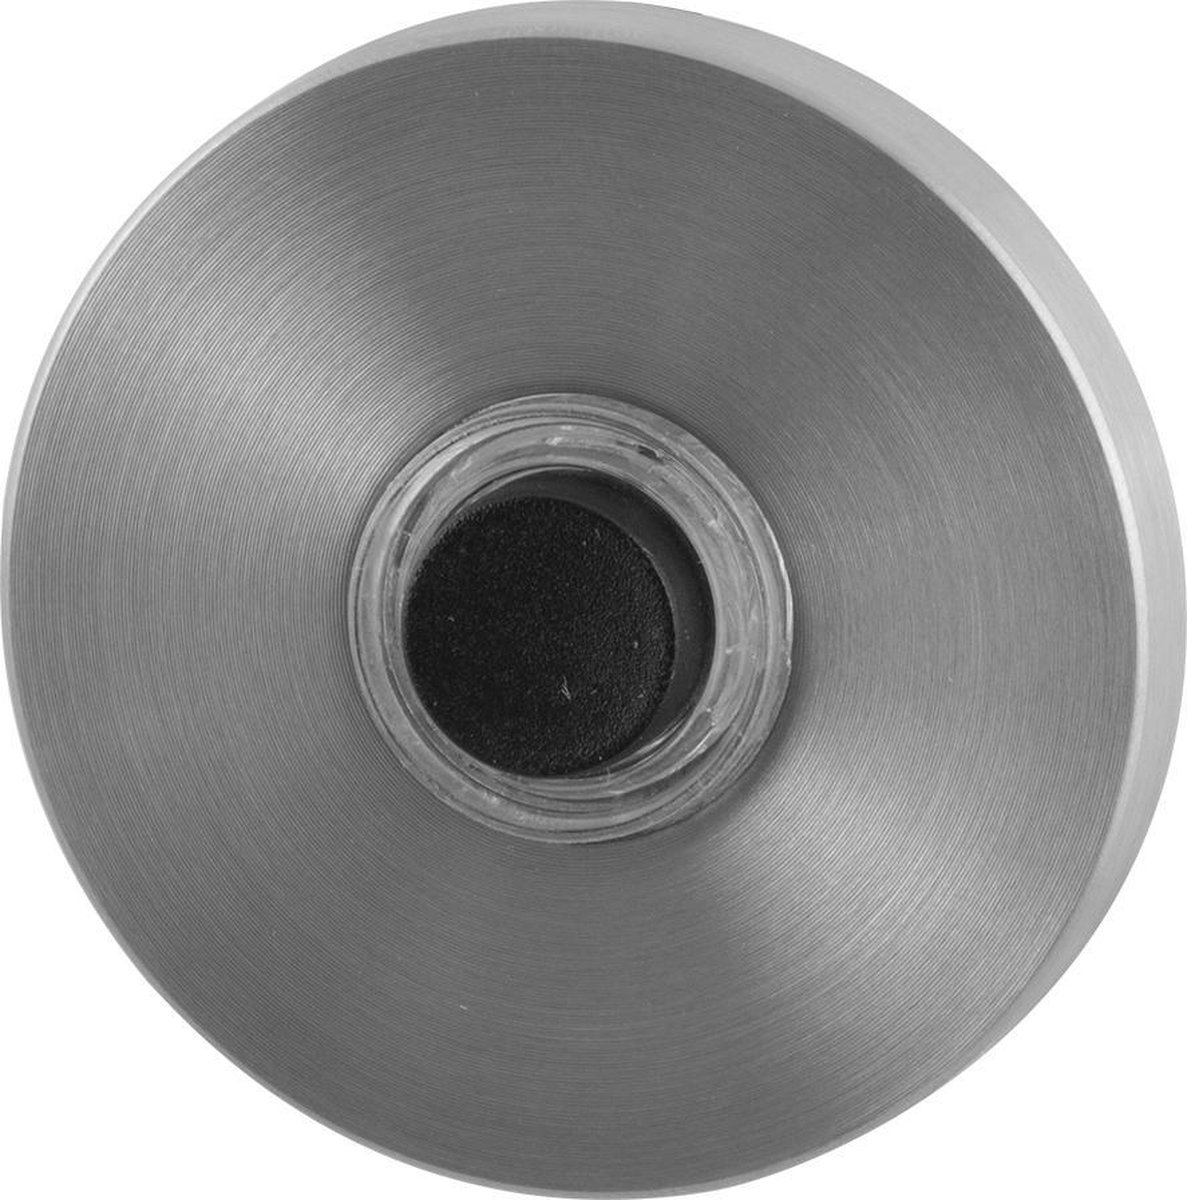 GPF9826.09 deurbel met zwarte button rond 50x8 mm RVS geborsteld